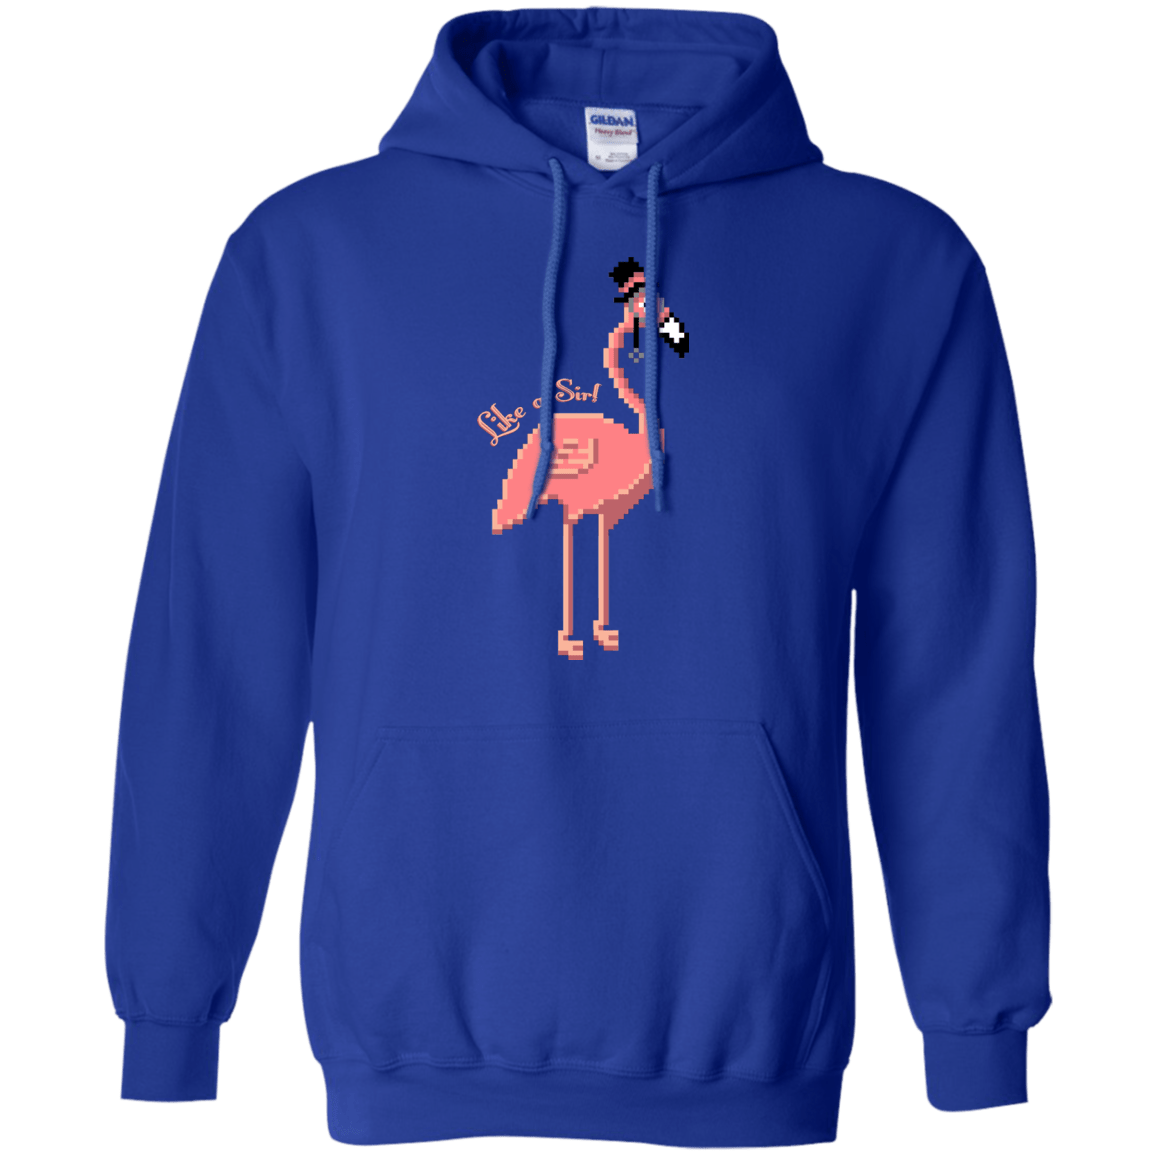 Sweatshirts Royal / S LikeASir Flamingo Pullover Hoodie